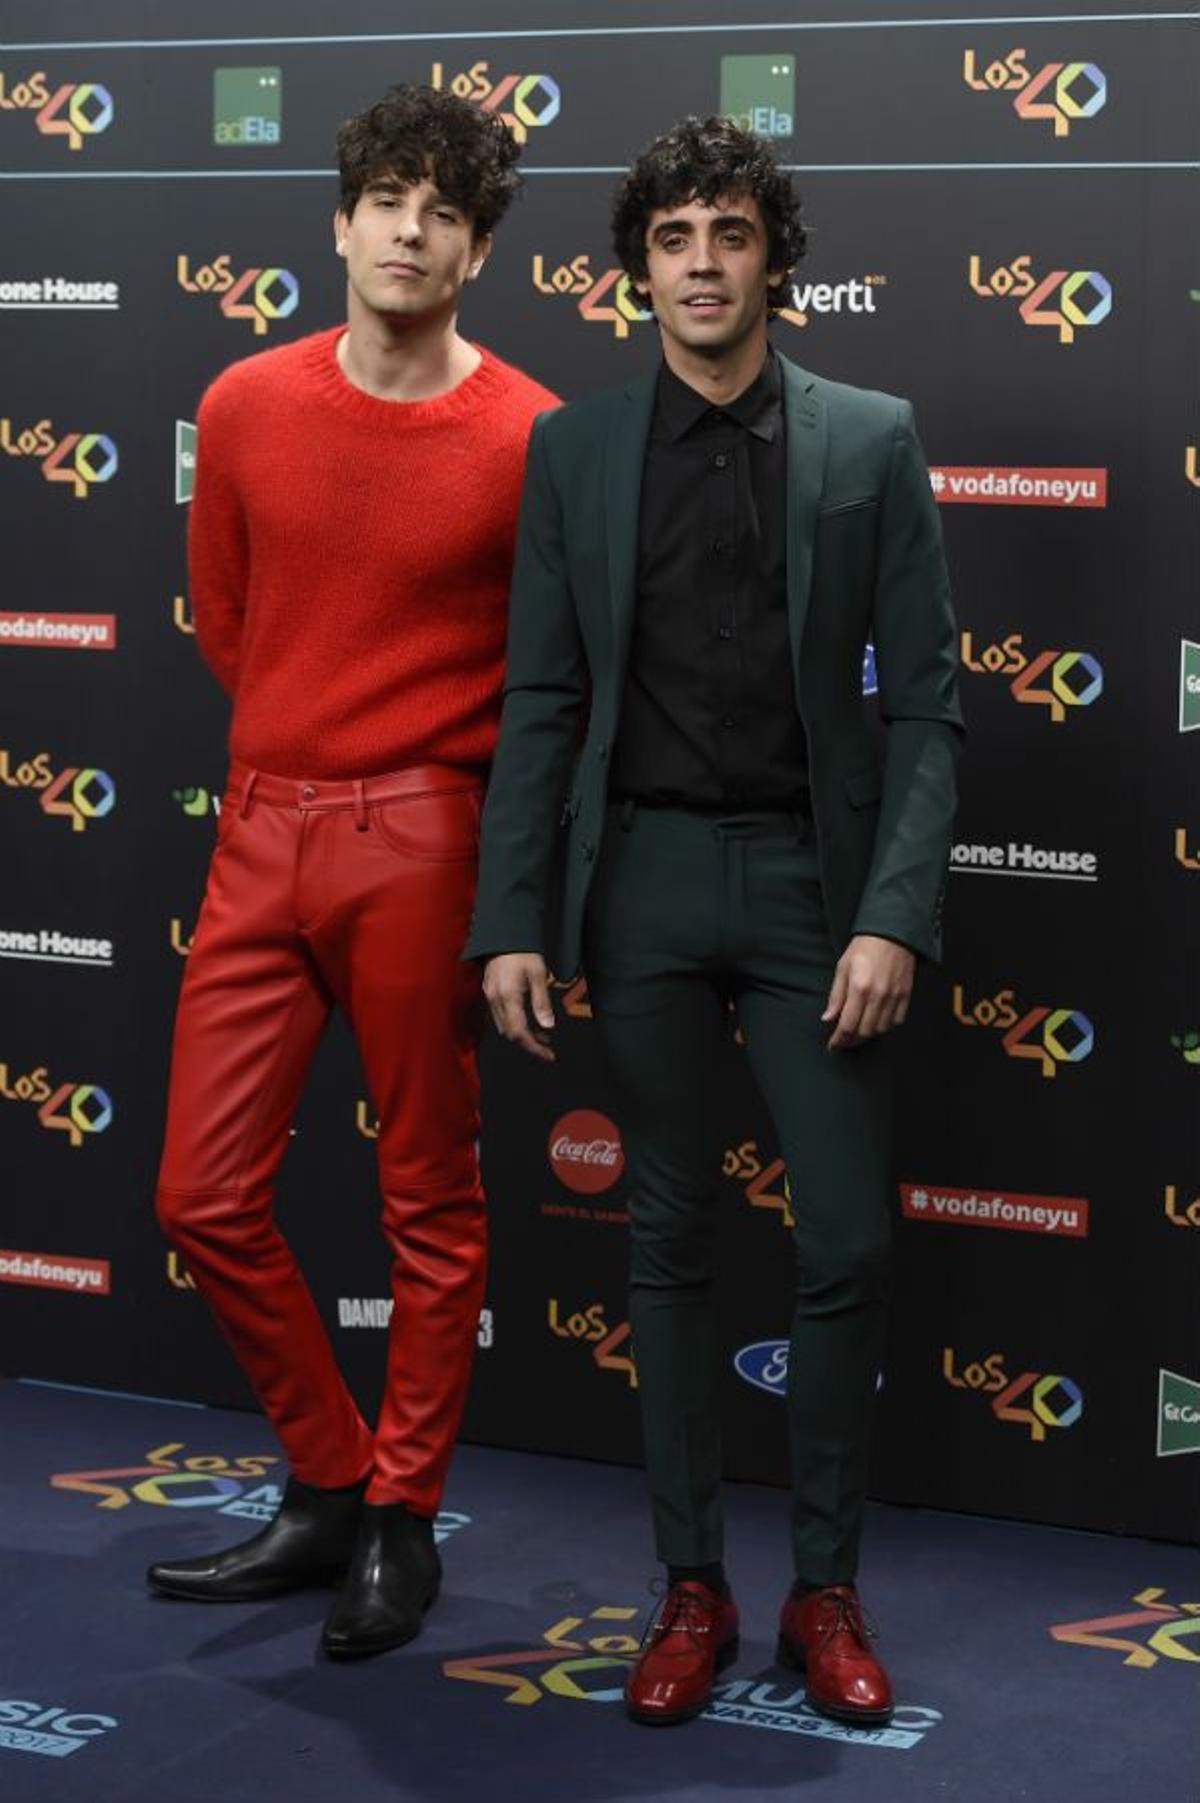 Javier Calvo y Javier Ambrossi en Los 40 Music Awards 2017